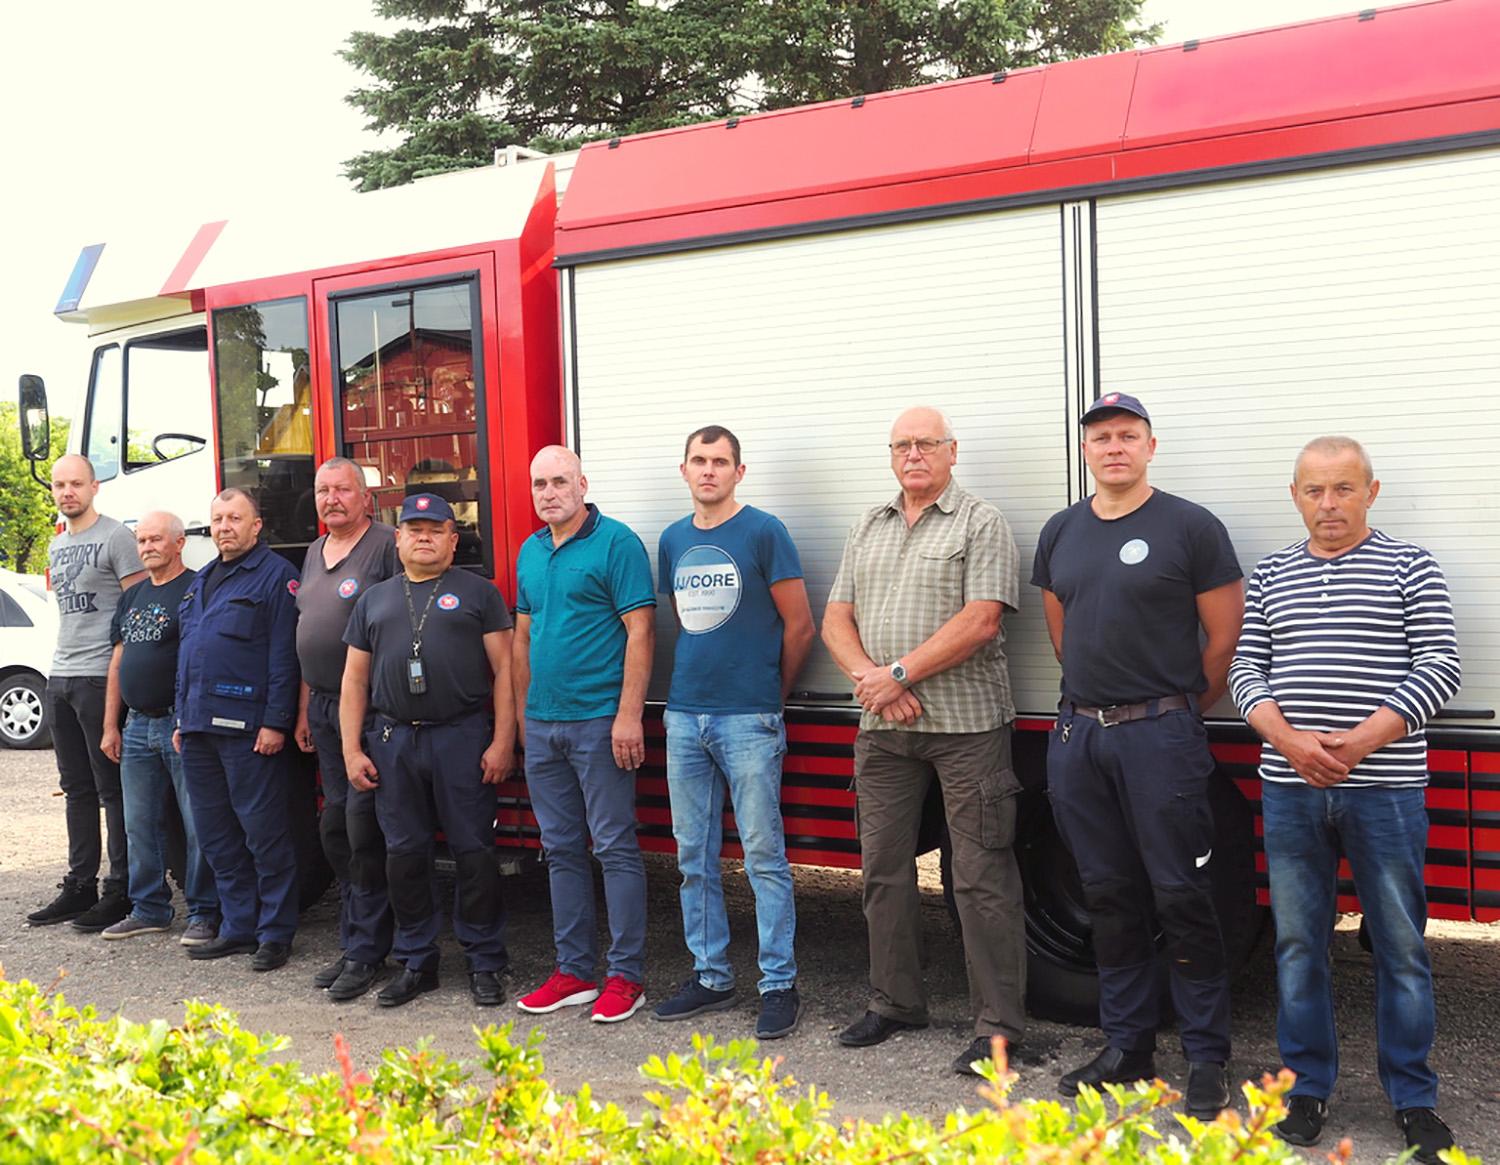 Aprūpinti saugiam darbui reikalingomis priemonėmis / Ukmergės rajono savivaldybės priešgaisrinės tarnybos ugniagesiai dirbs saugiau.